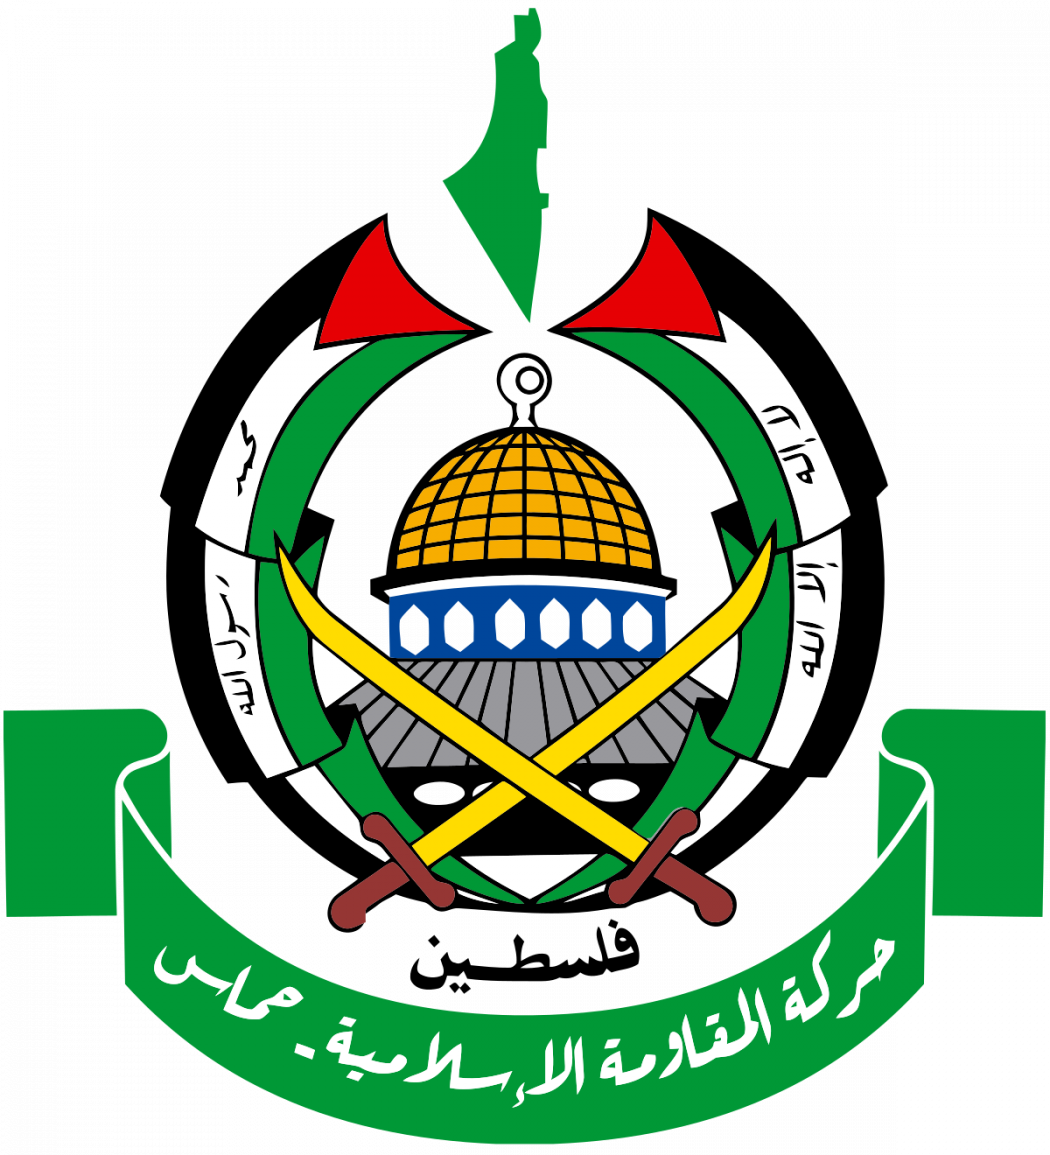 Le Conseil de l’Europe collabore depuis 2011 avec le « Conseil législatif palestinien », dominé par le Hamas